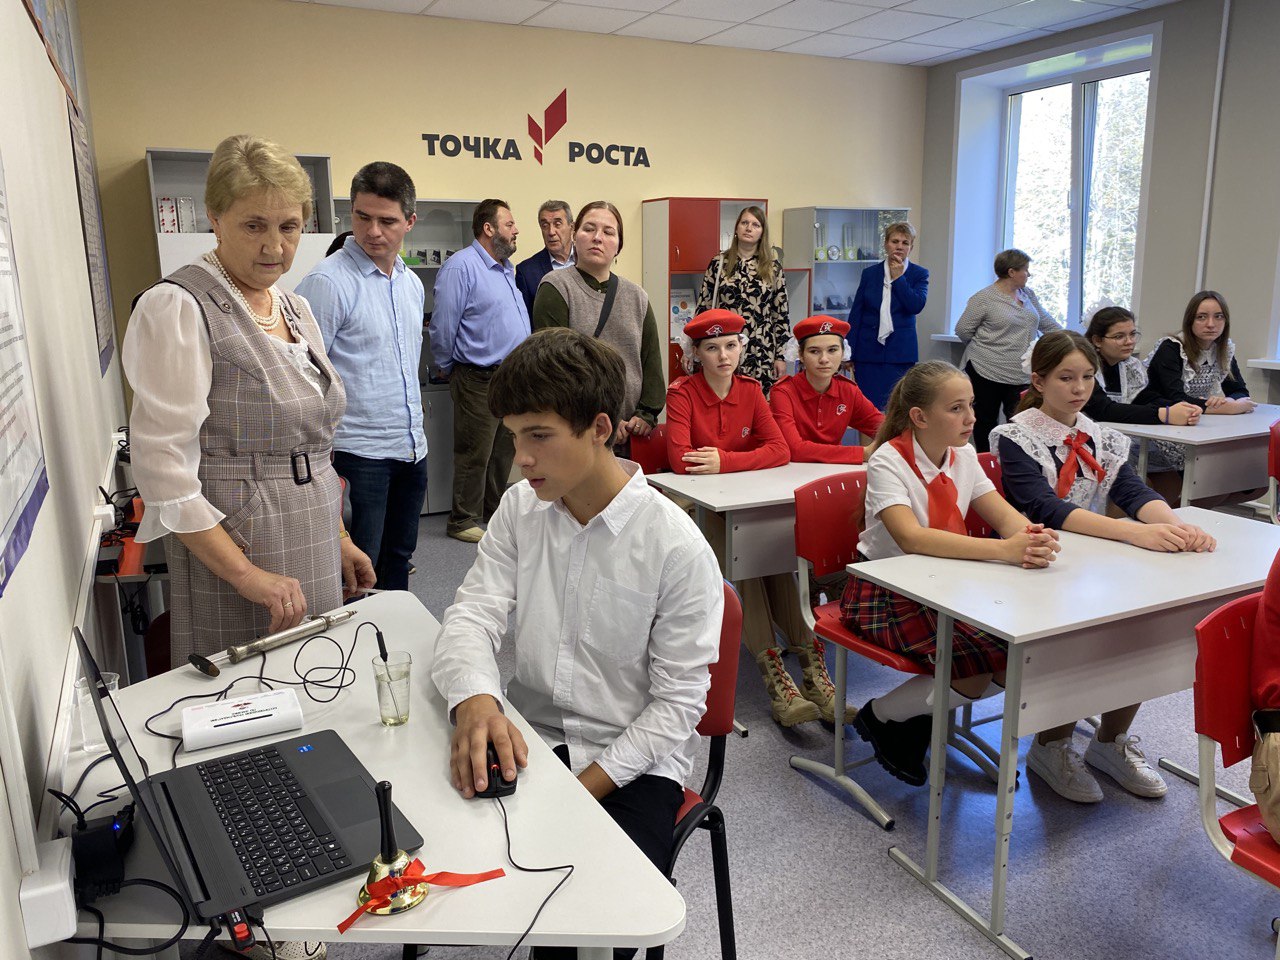 Открытие центра Точка Роста в МОУ Ильинской основной общеобразовательной школе имени Подольских Курсантов